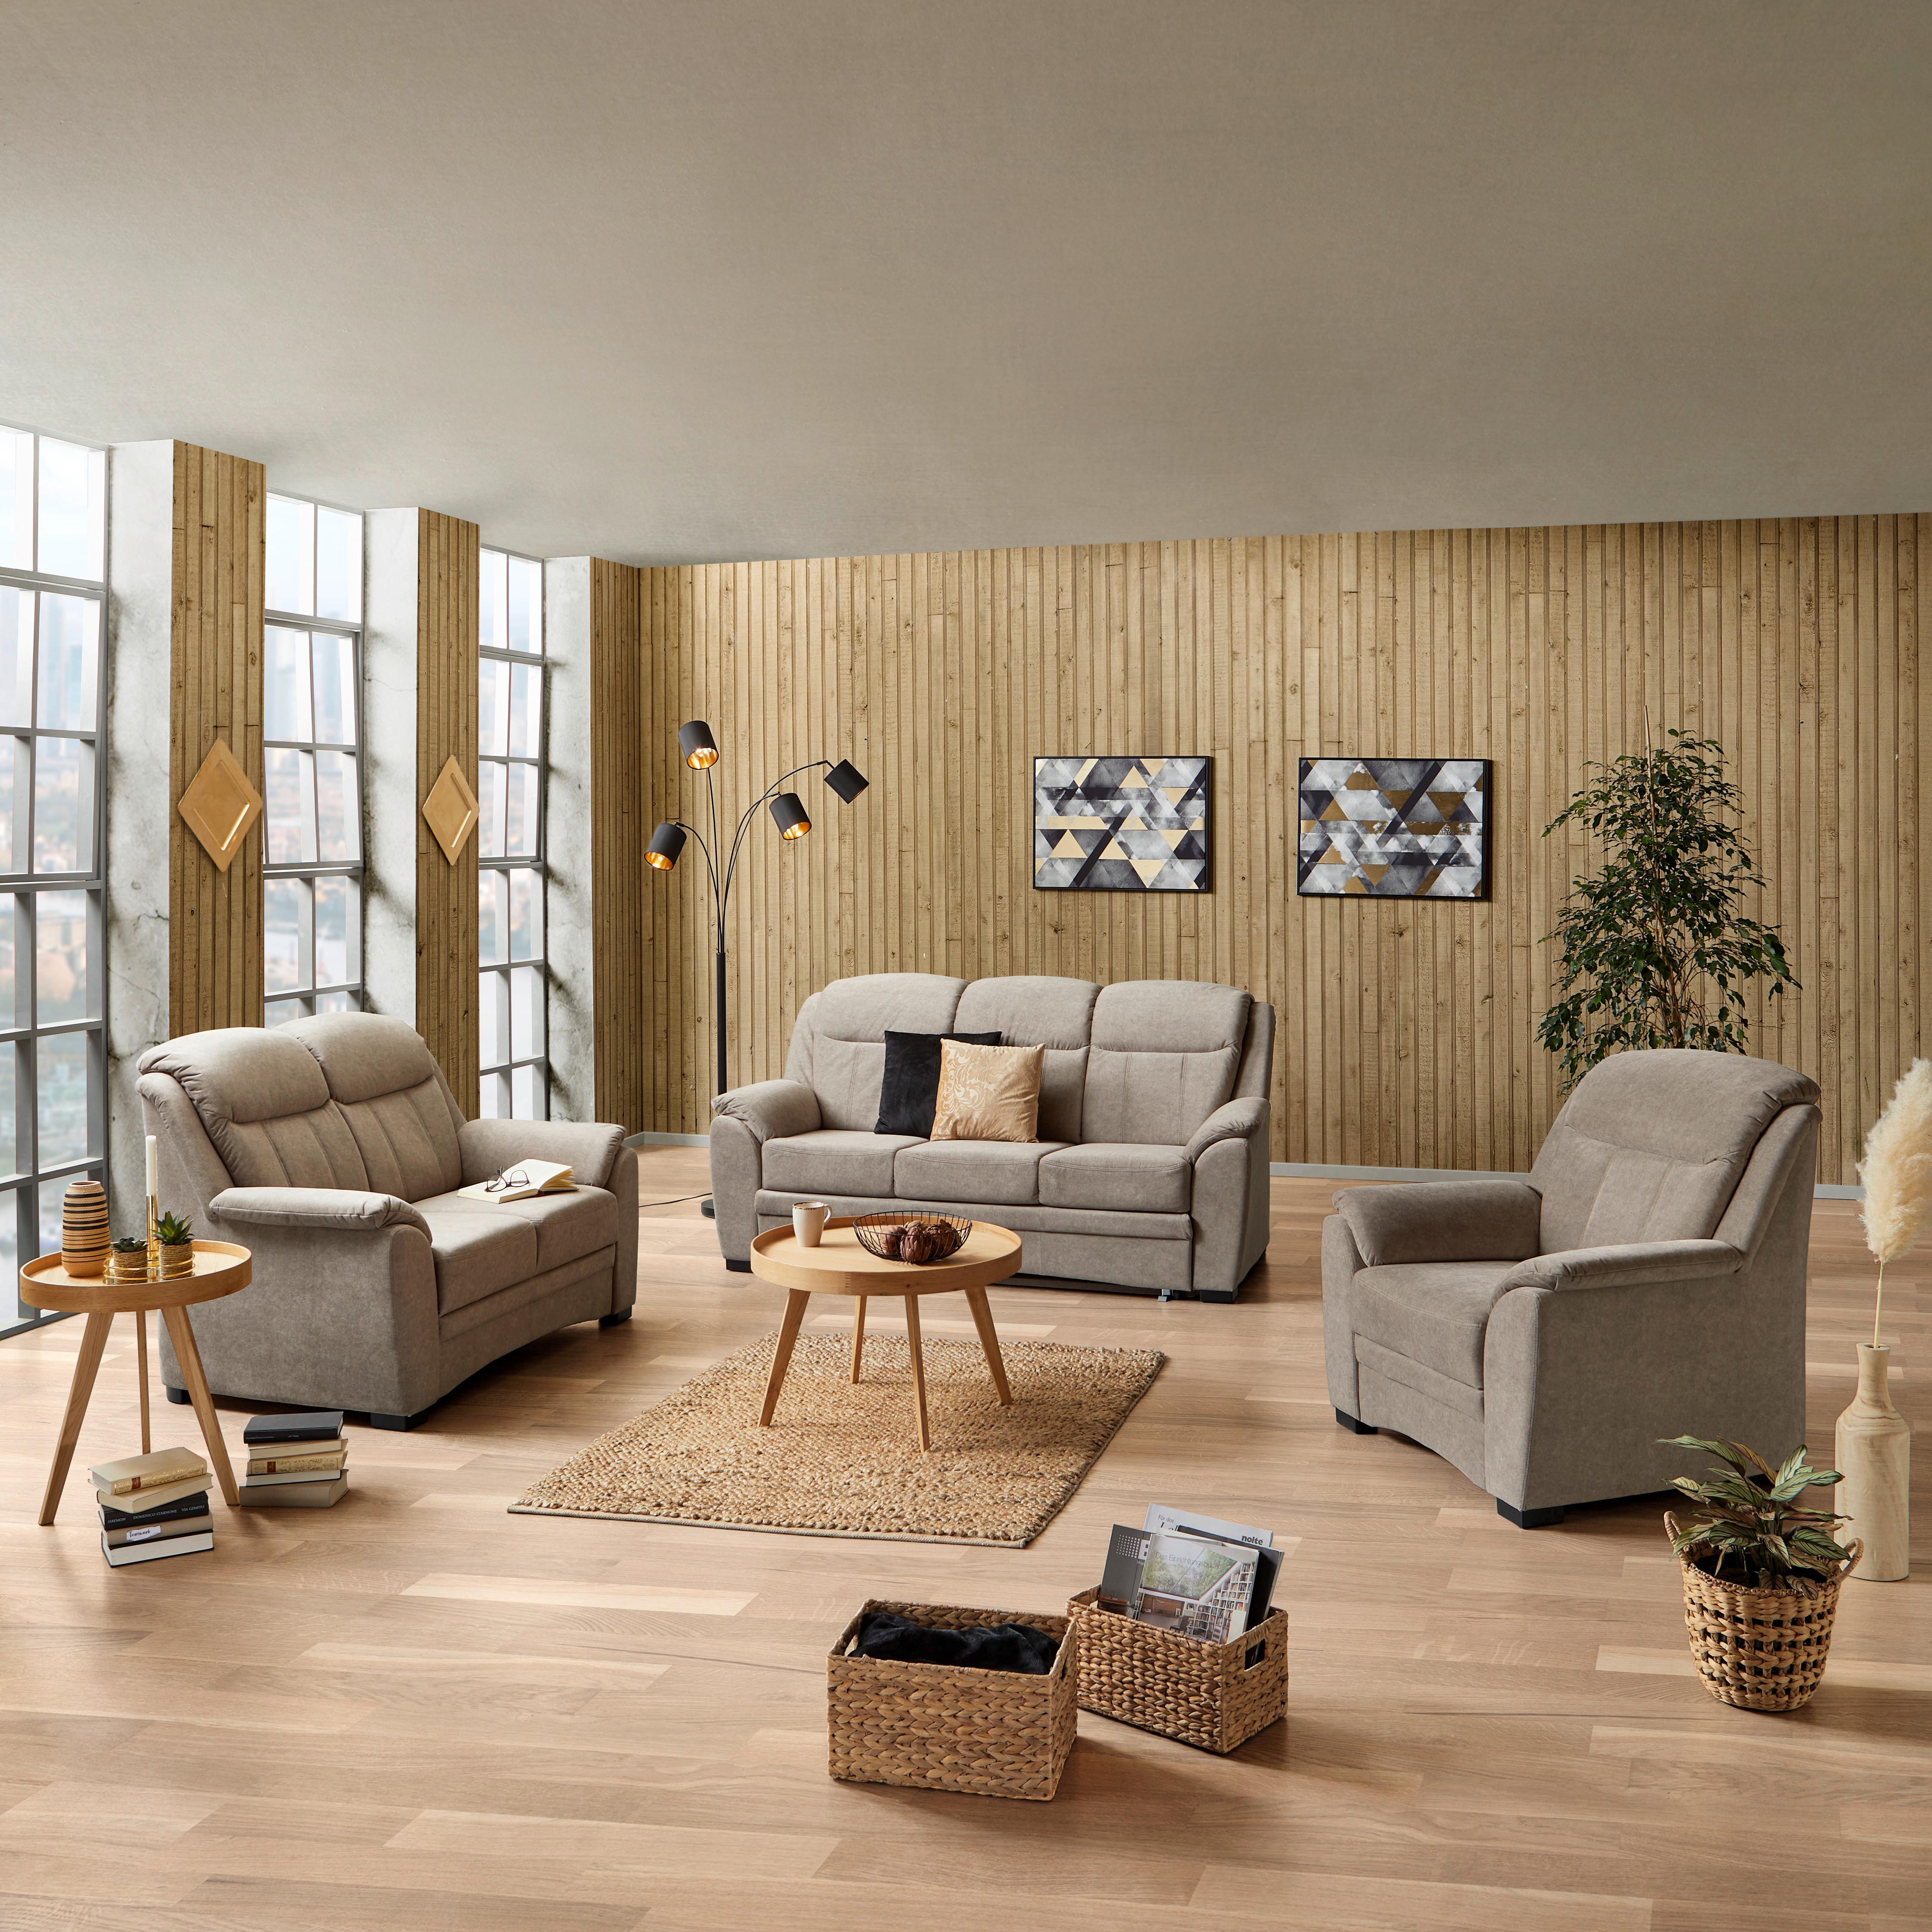 2-Sitzer-Sofa Bruno mit Echtem Rücken Sandfarben Velours - Sandfarben/Hellbraun, MODERN, Textil (142/99/99cm)